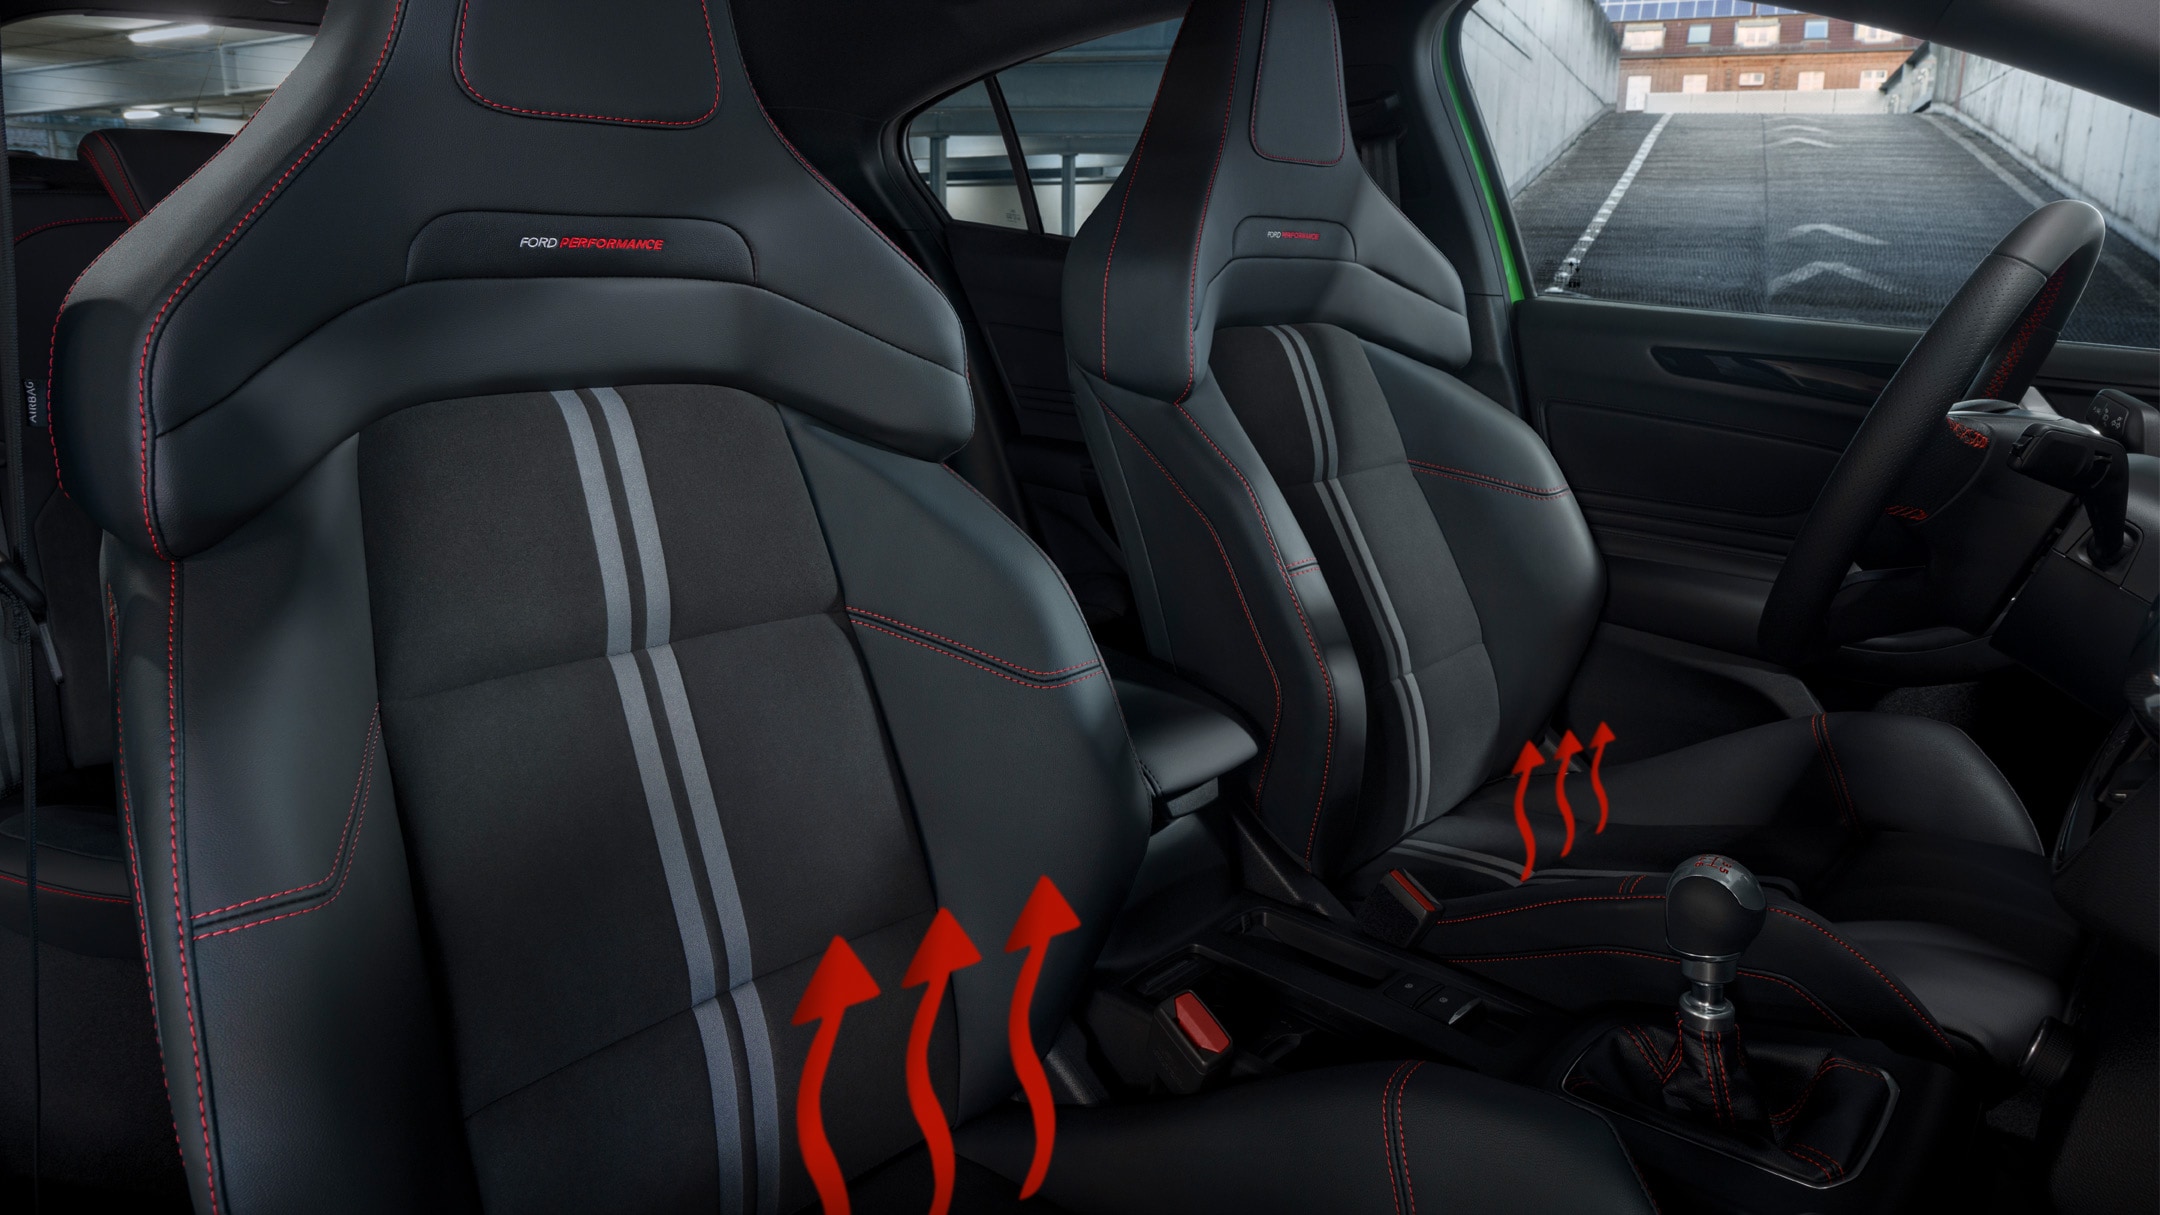 Ford Focus ST Innenraum. Detailansicht der Sitze.